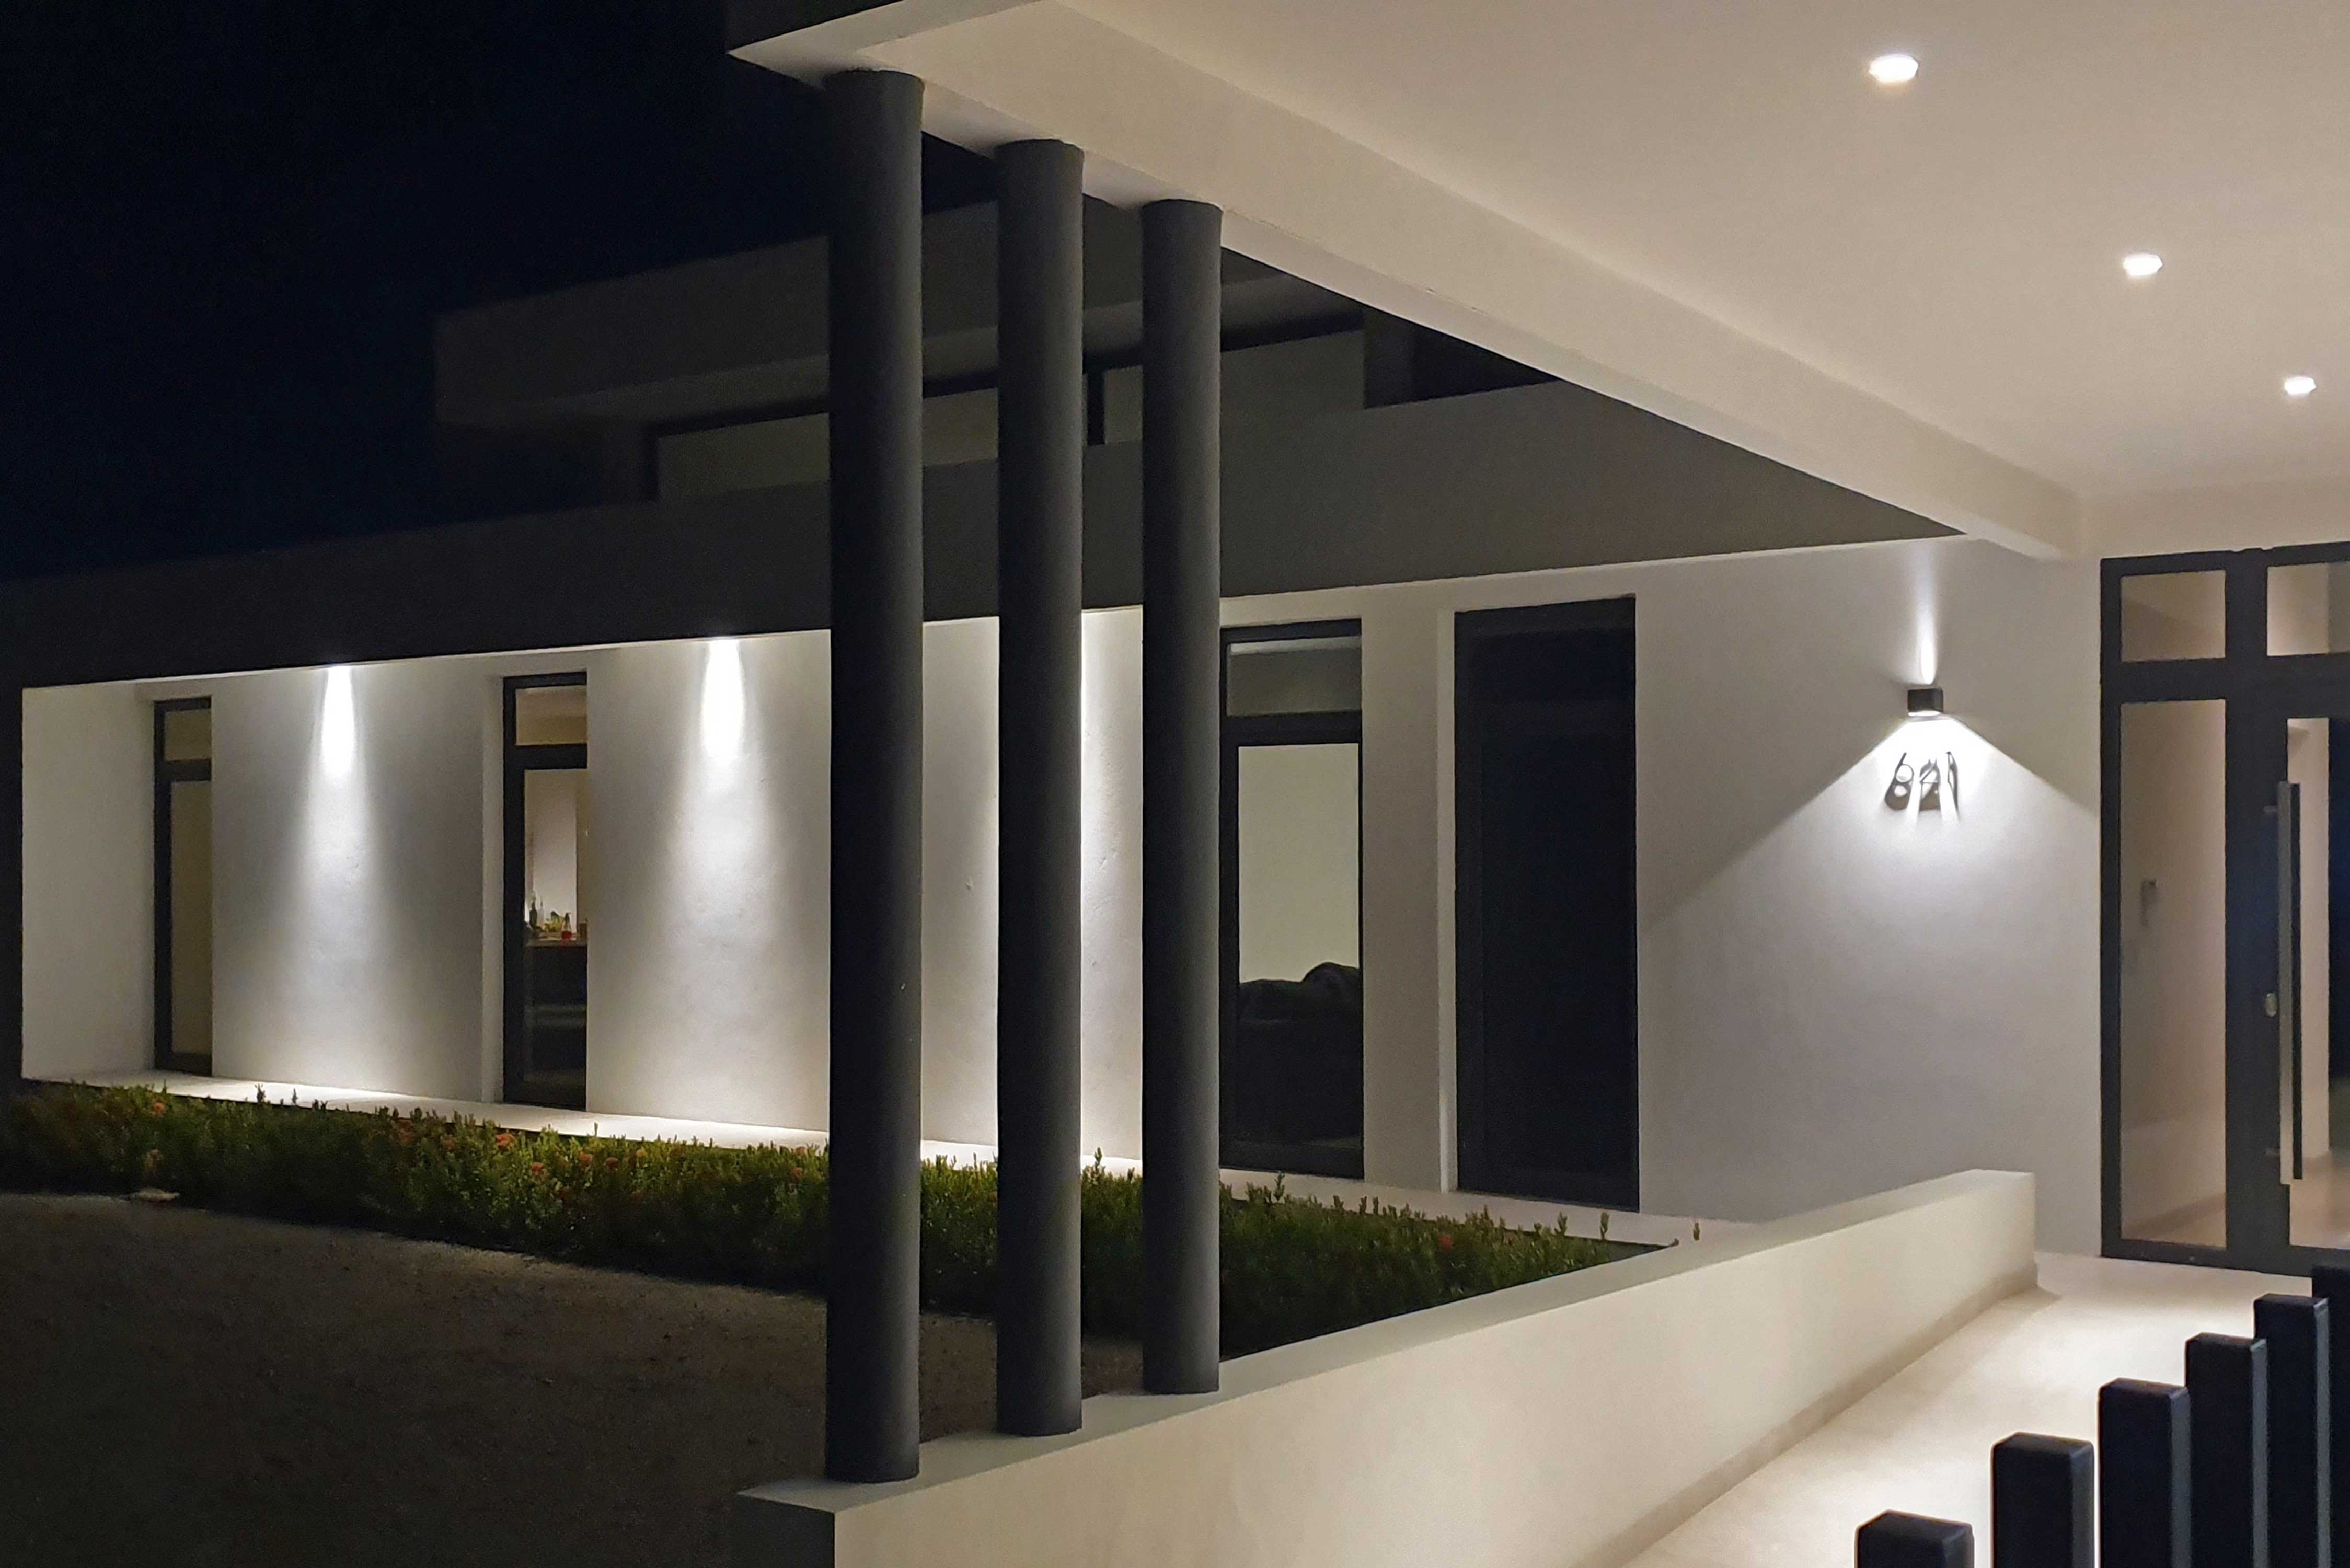 Architectenbureau Amsterdam Maxim Winkelaar maakt ontwerp voor een moderne nieuwbouwvilla op Aruba, Bonaire en Curaçao.